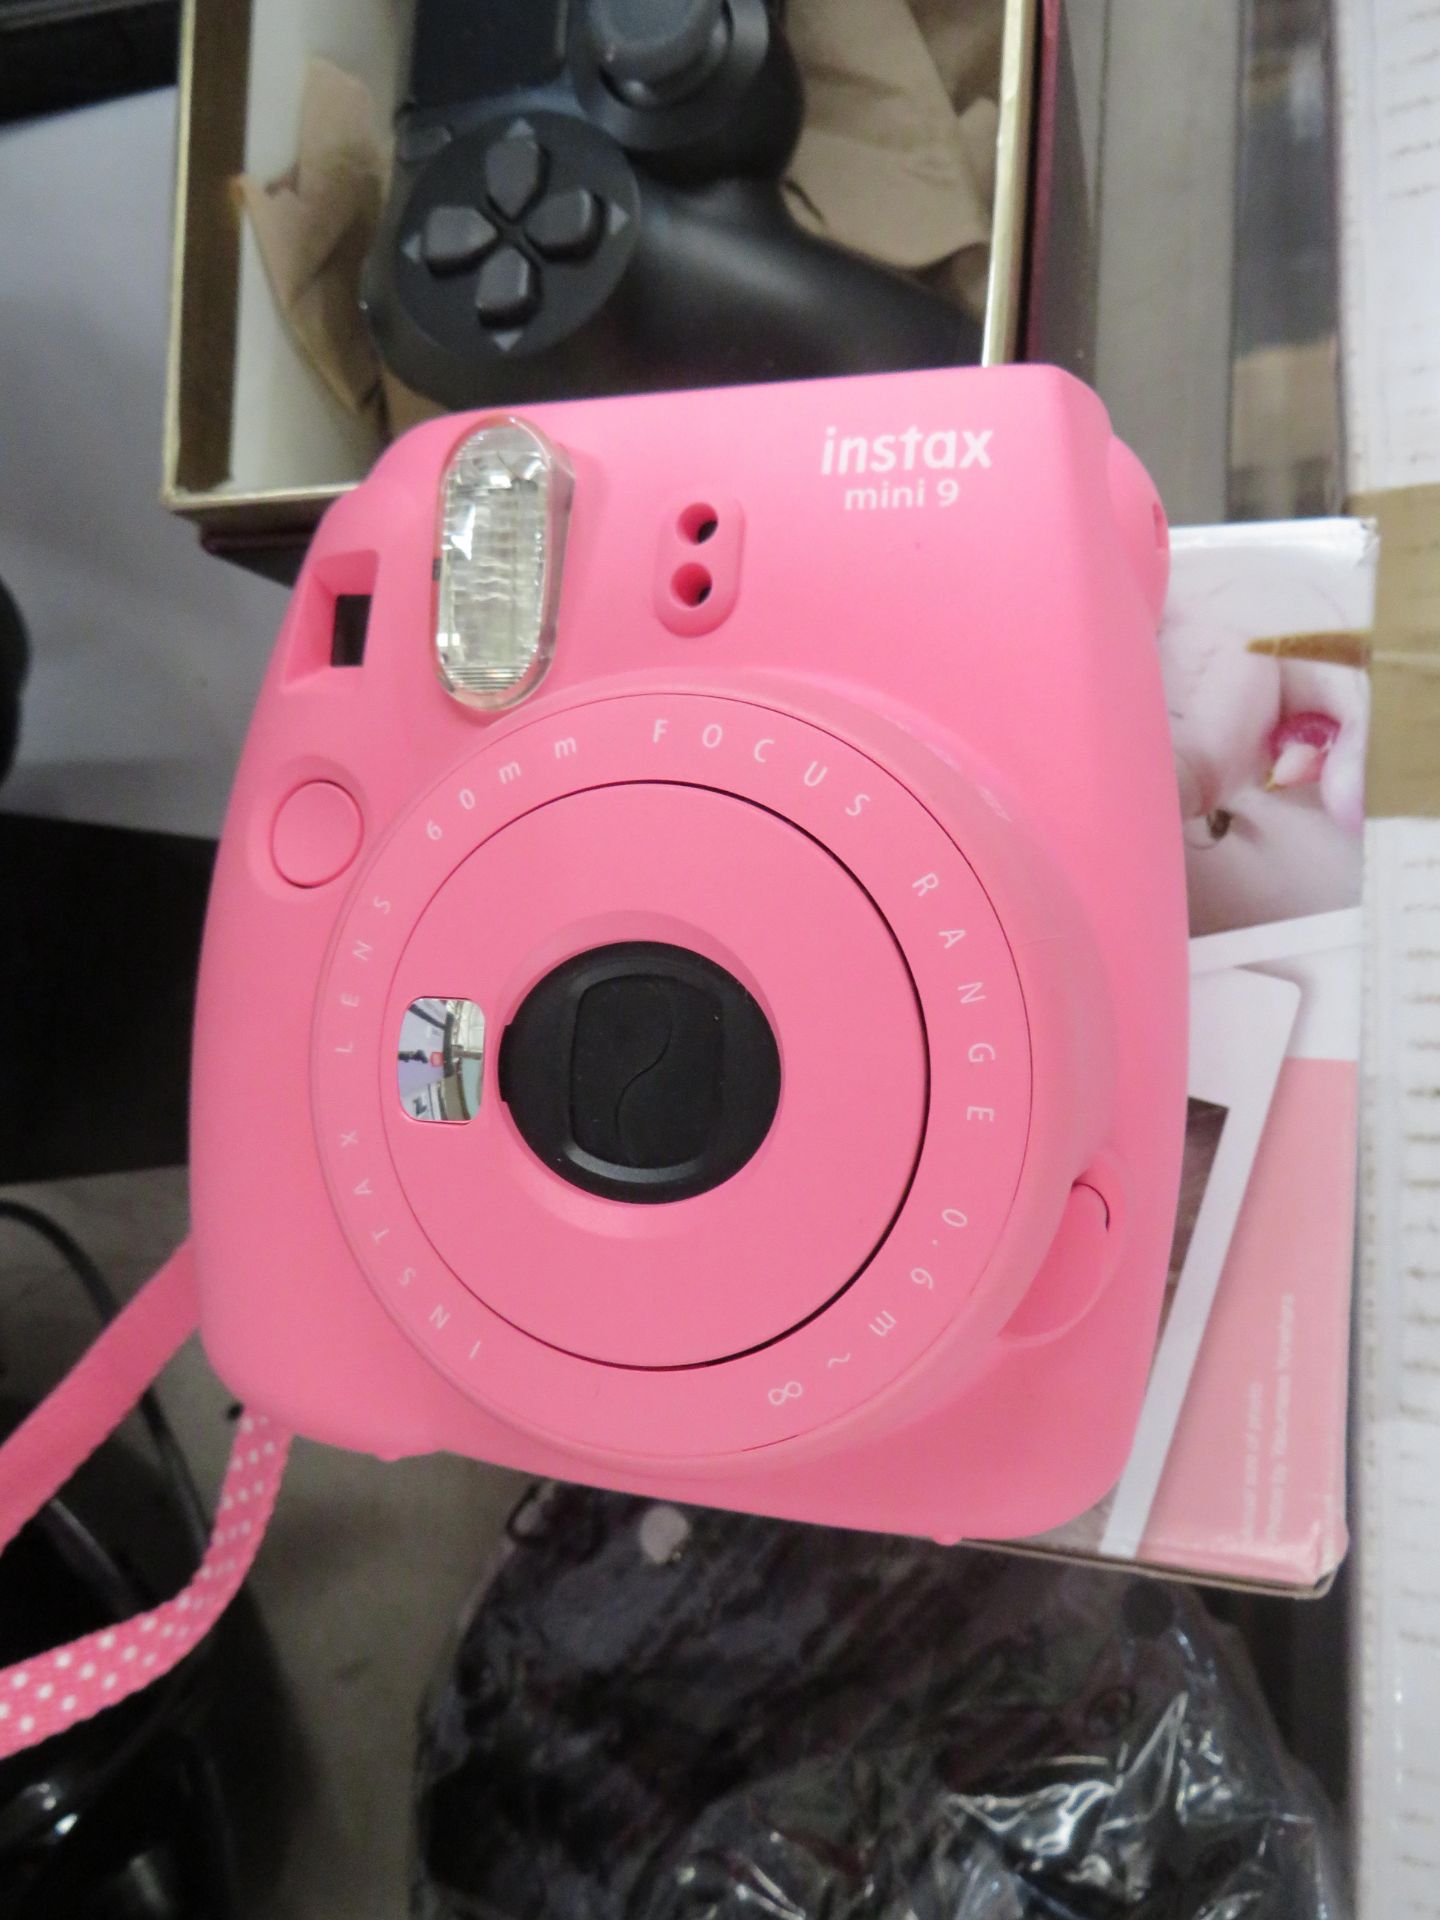 Instax Mini 9 instant camera,unchecked in original box